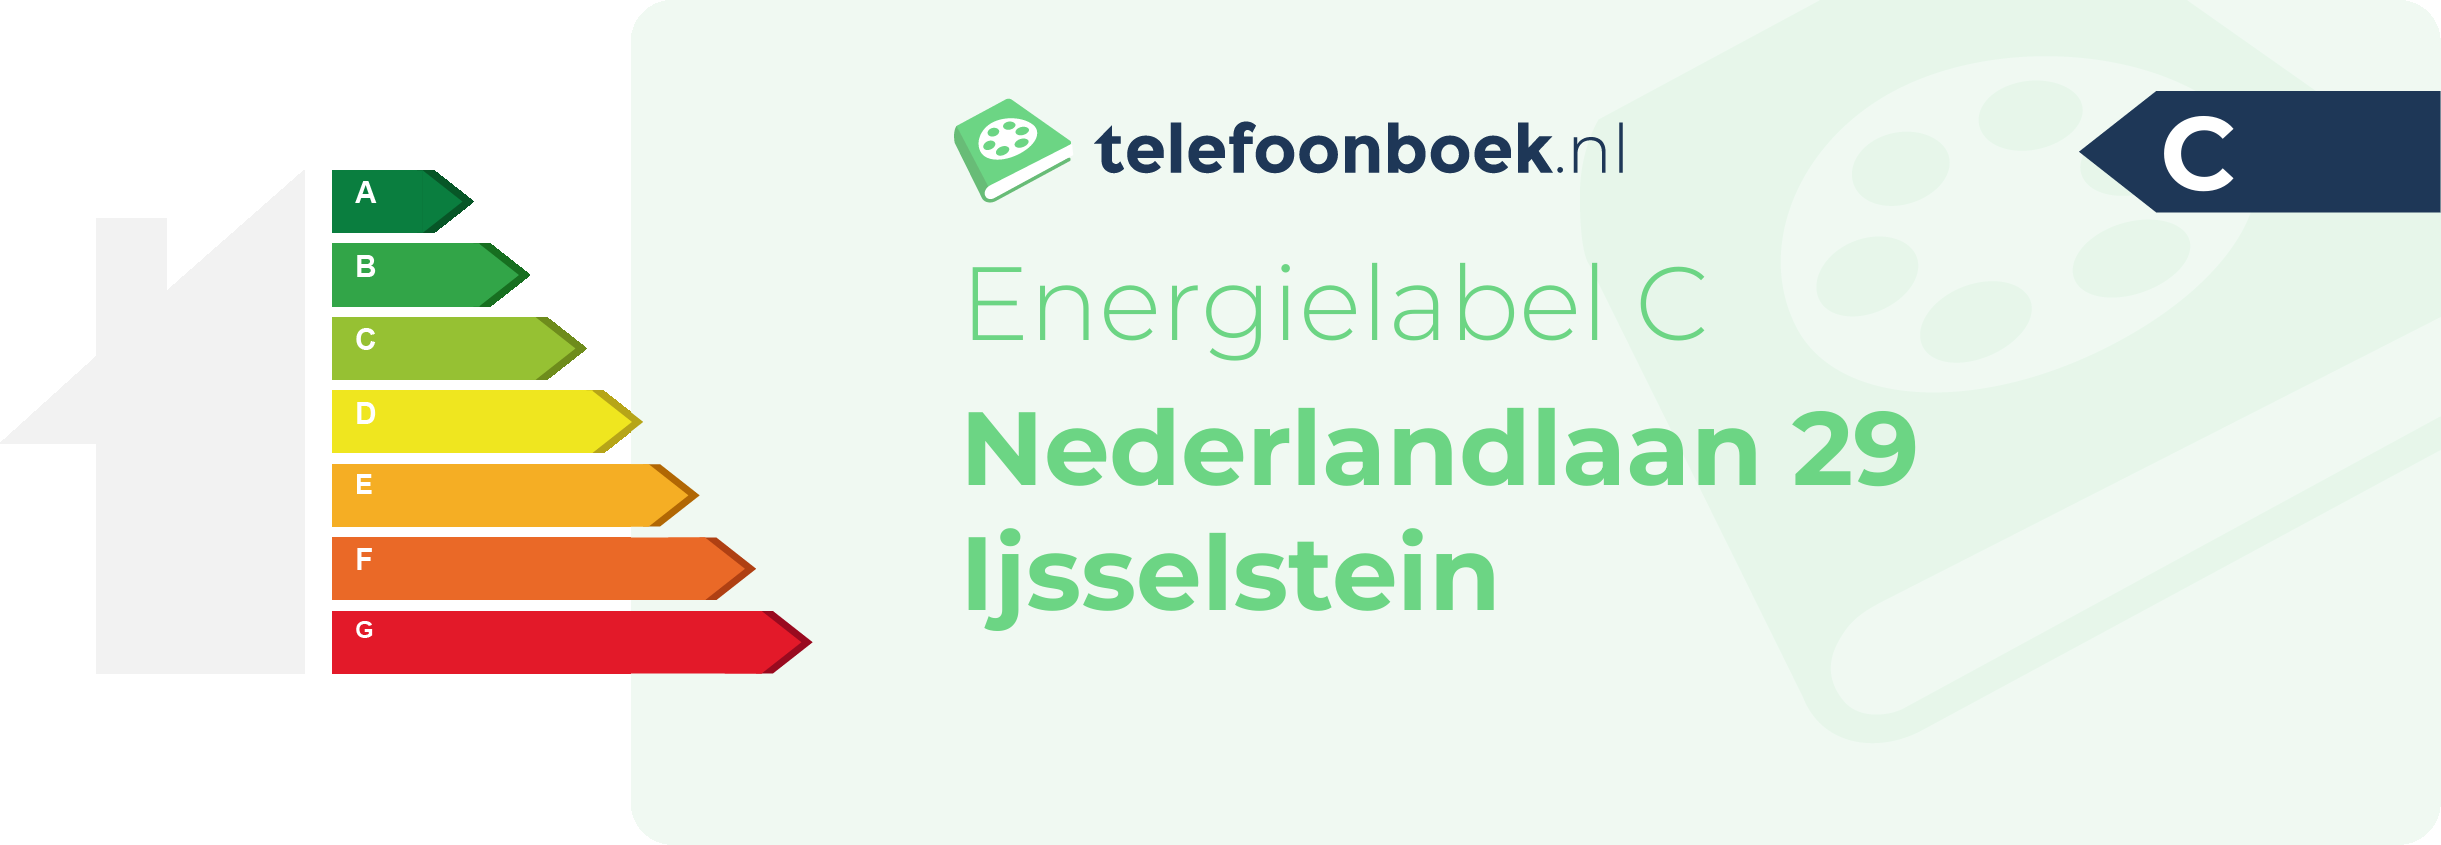 Energielabel Nederlandlaan 29 Ijsselstein